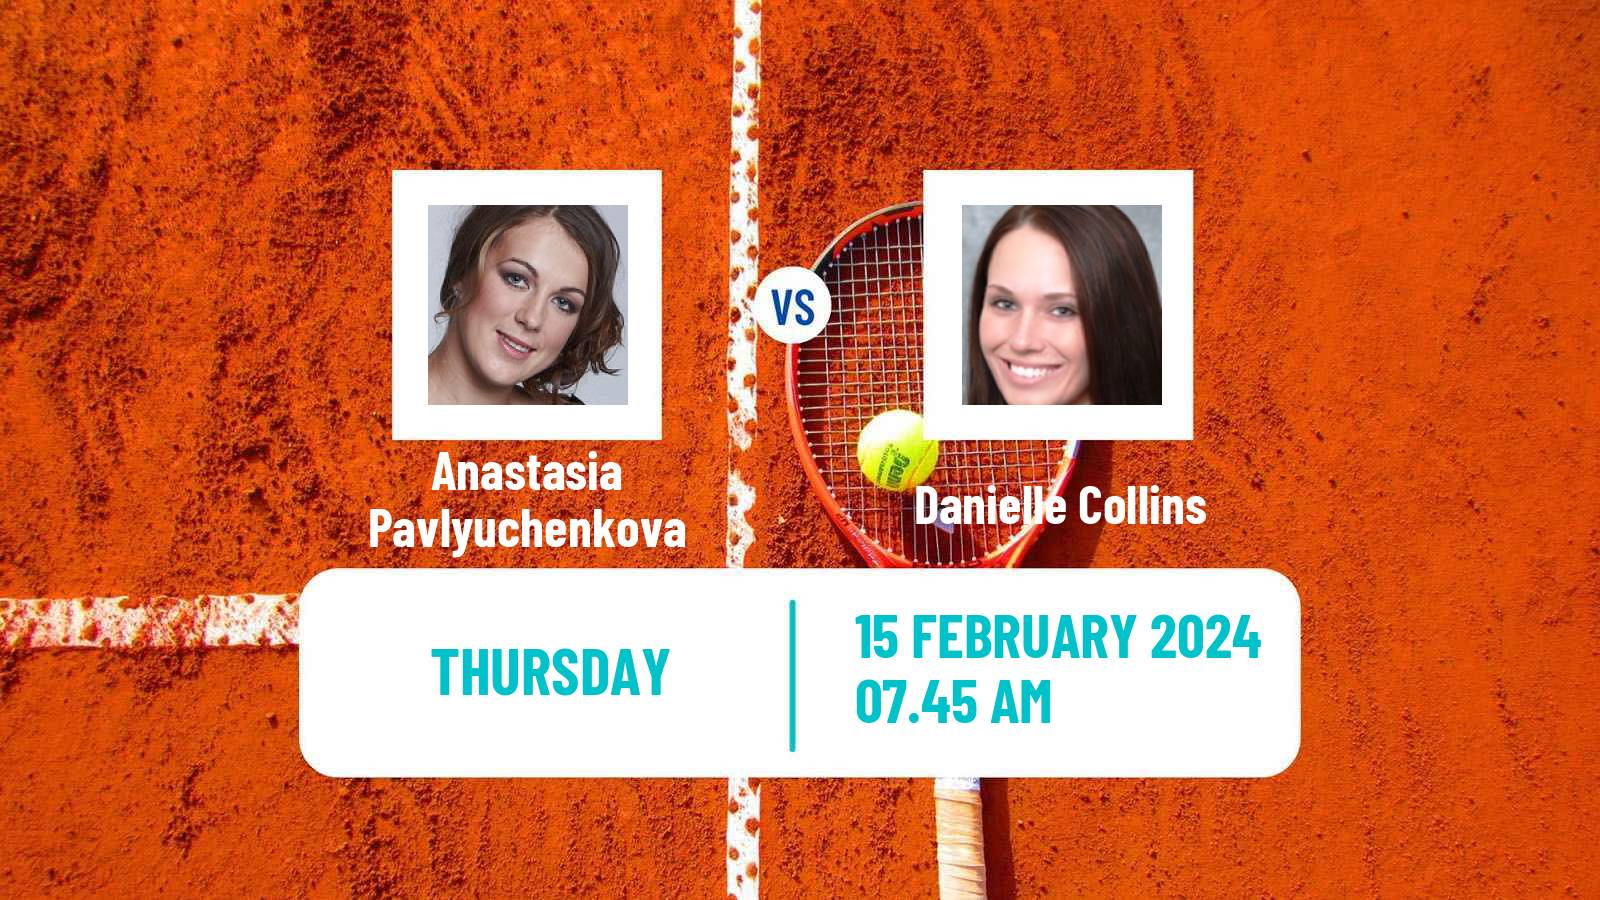 Tennis WTA Doha Anastasia Pavlyuchenkova - Danielle Collins